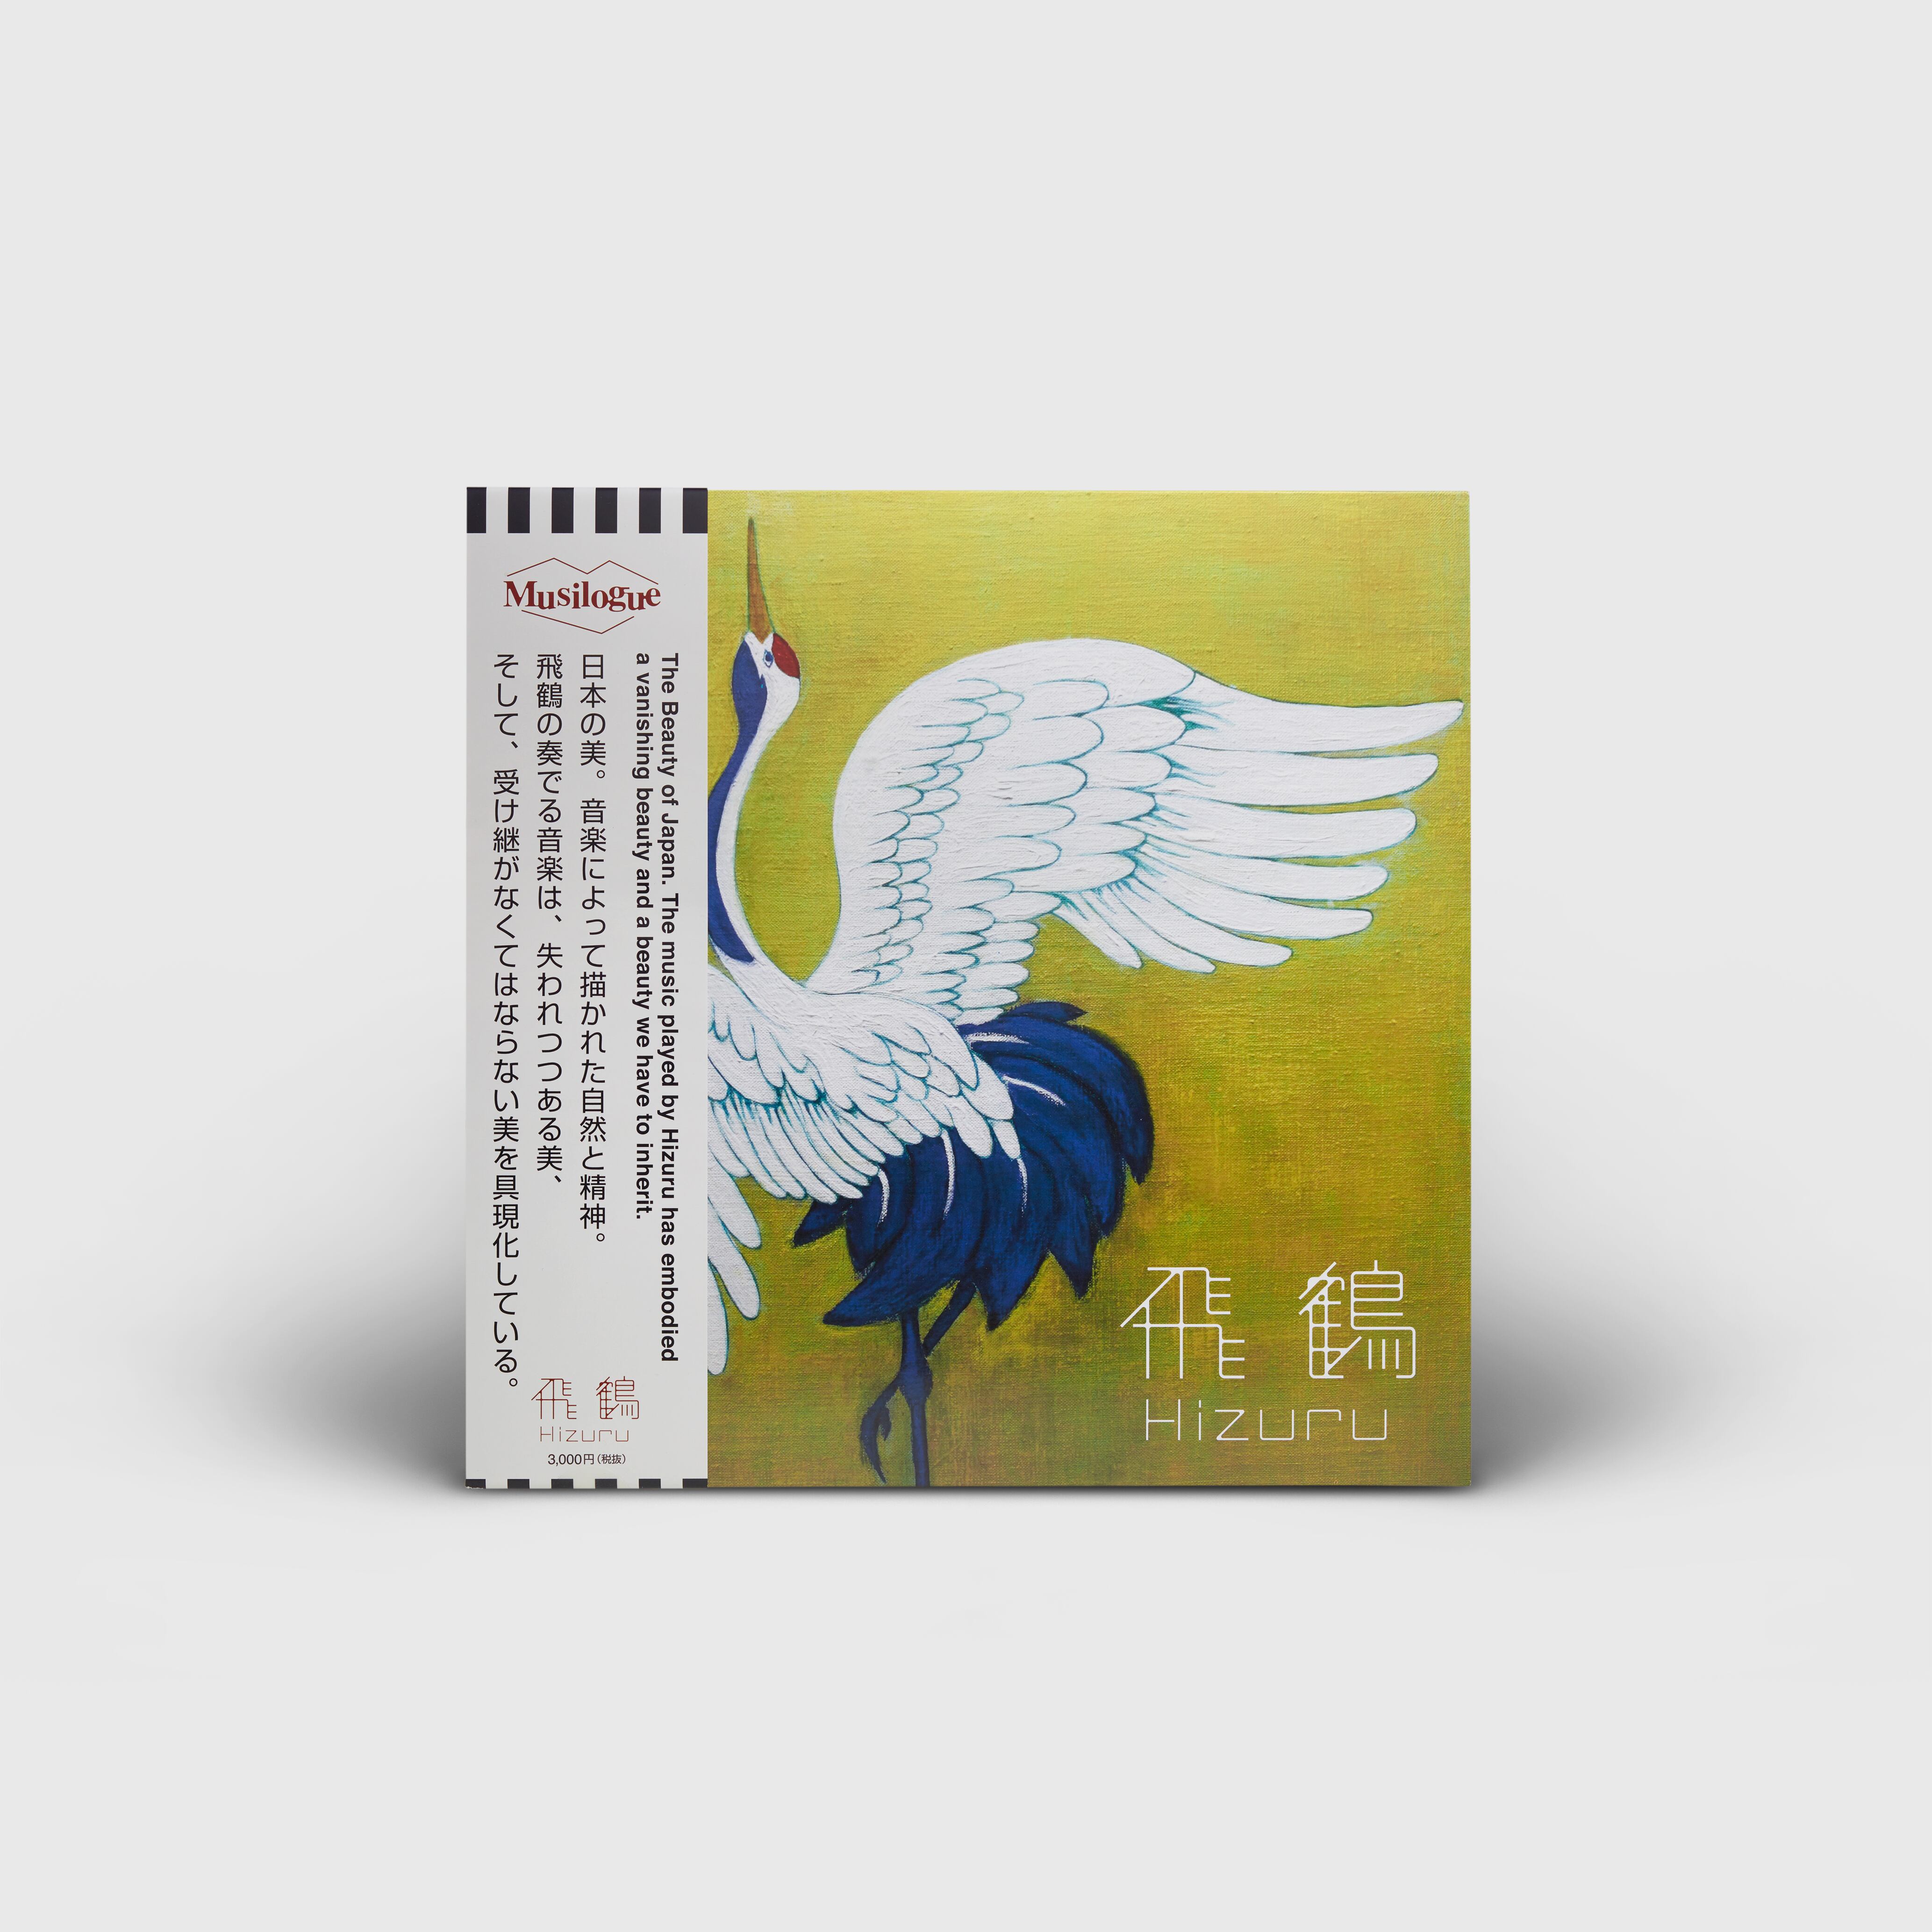 『飛鶴／Hizuru』（The 3rd press vinyl with obi)